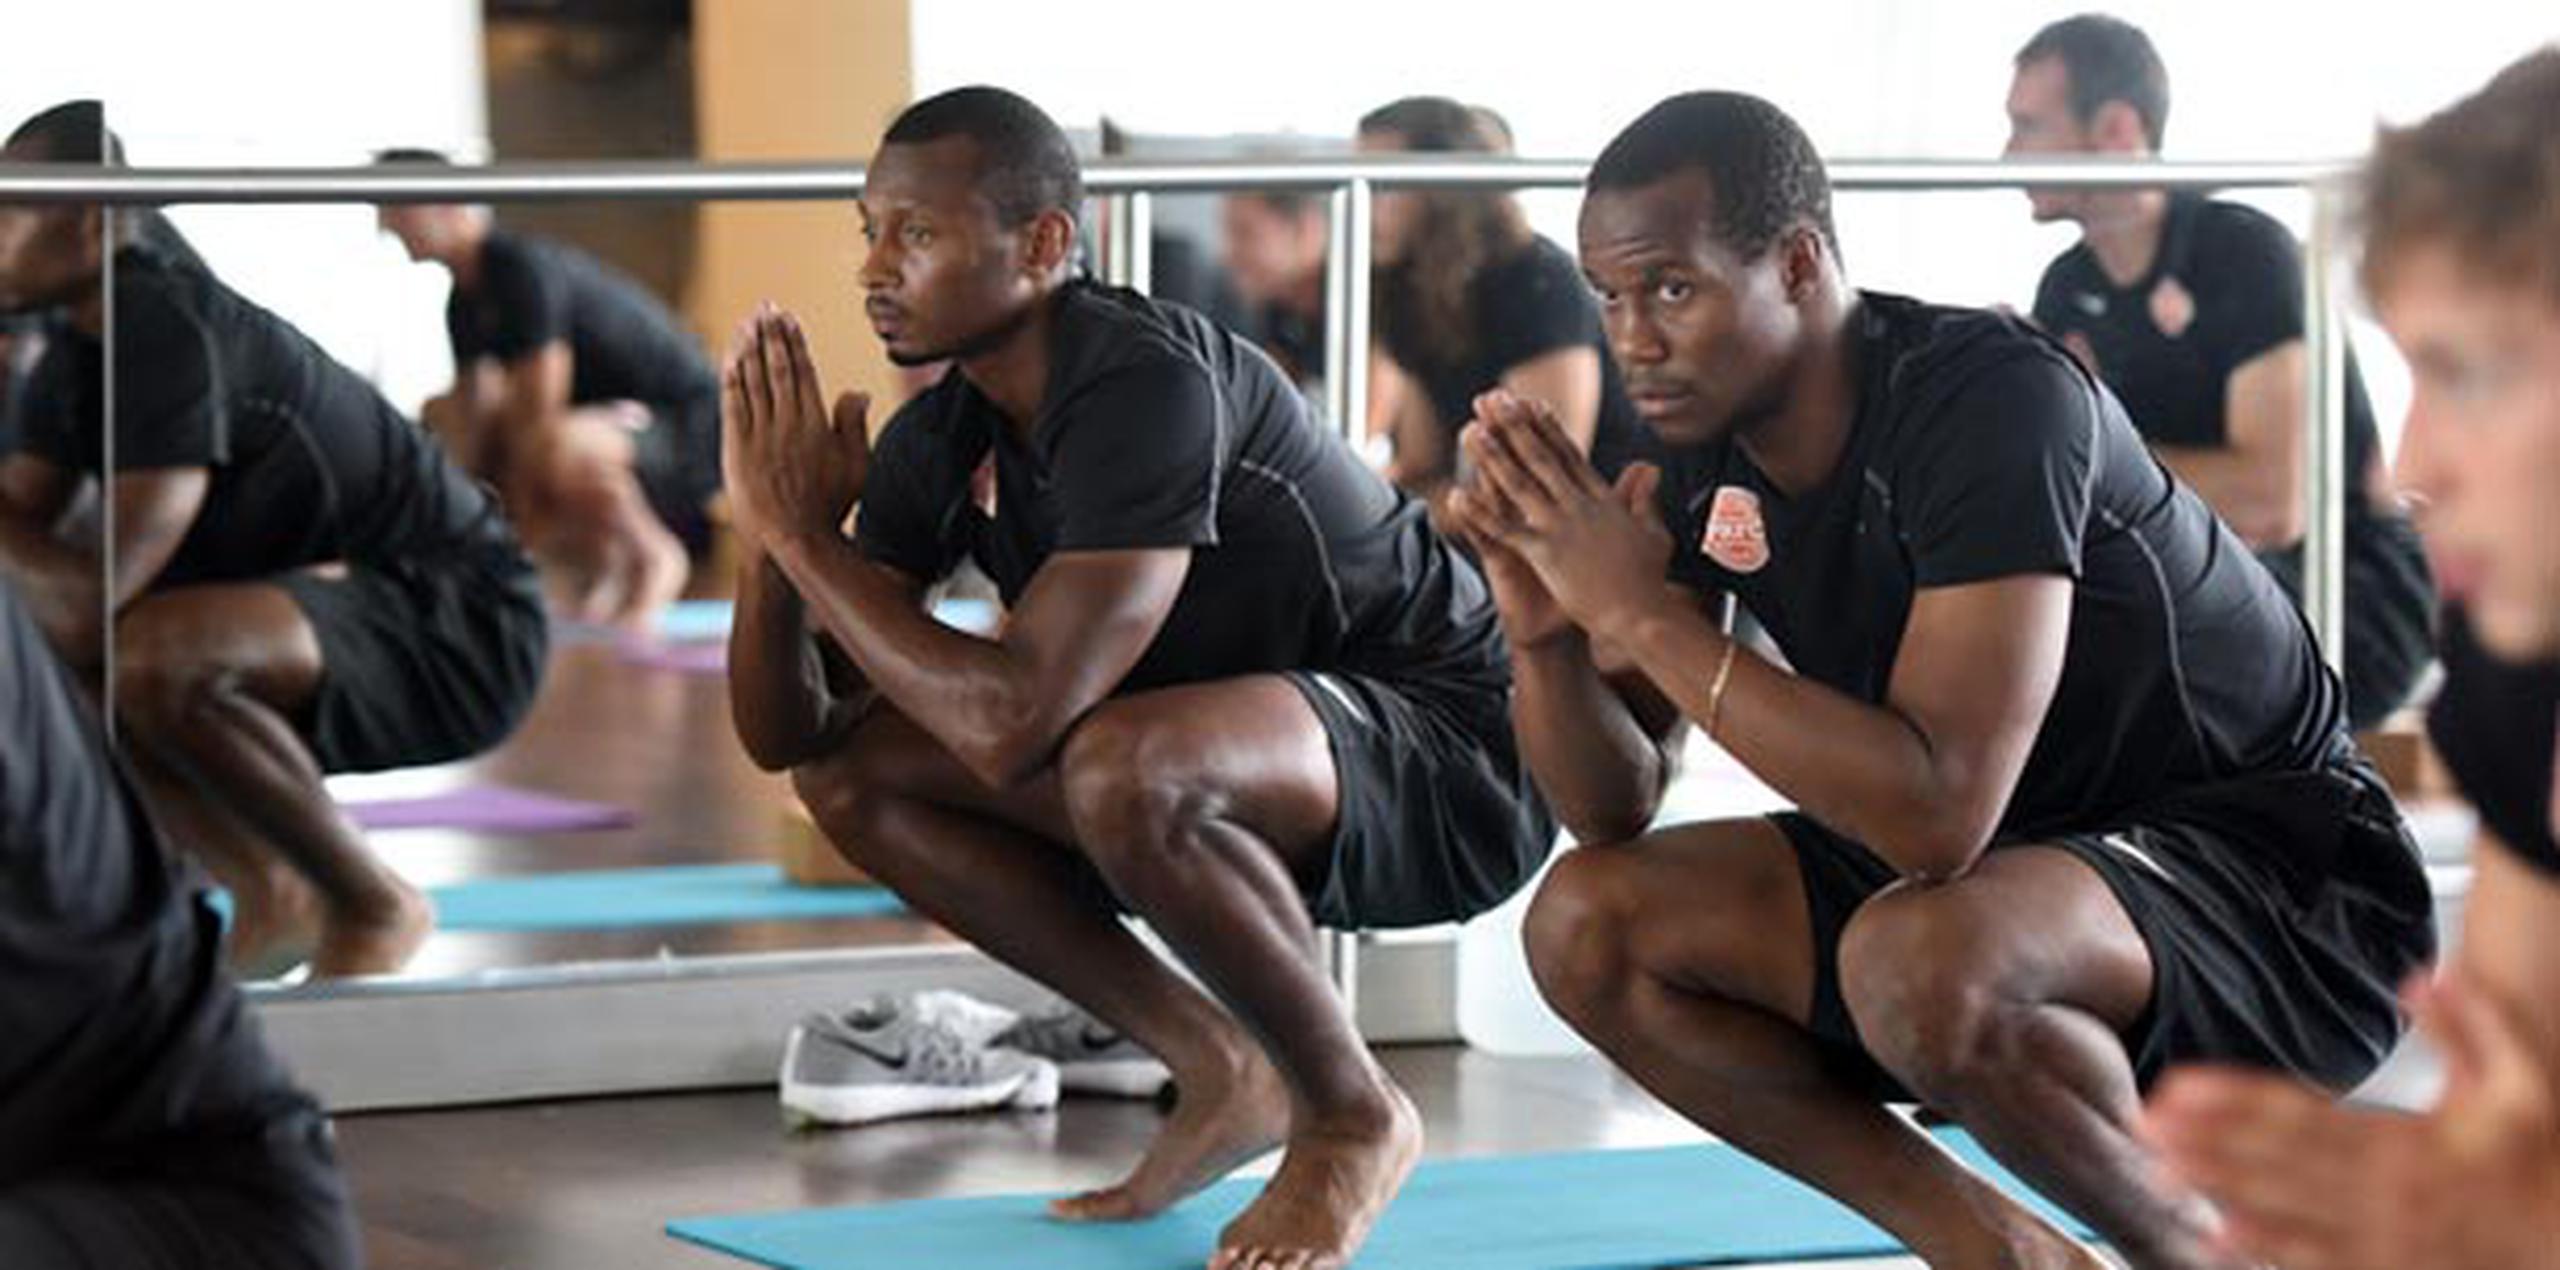 Las rutinas de yoga han ayudado a los futbolistas a relajar los músculos luego de largas y calurosas sesiones de entrenamiento. (andre.kang@gfrmedia.com)